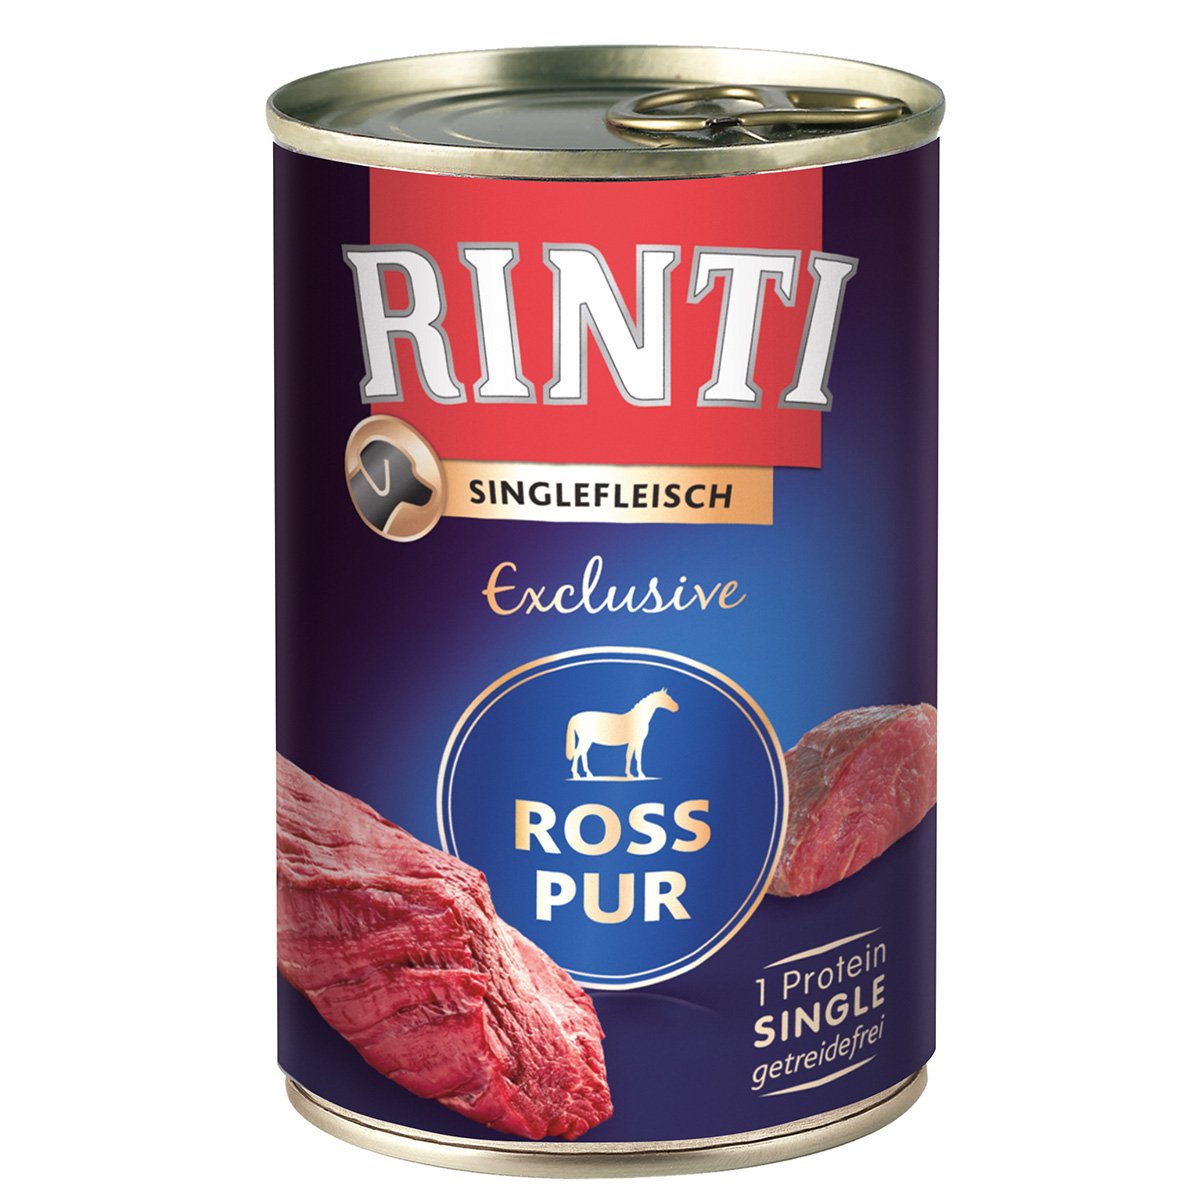 Rinti Singlefleisch Exclusive Ross pur 24x400g von Rinti